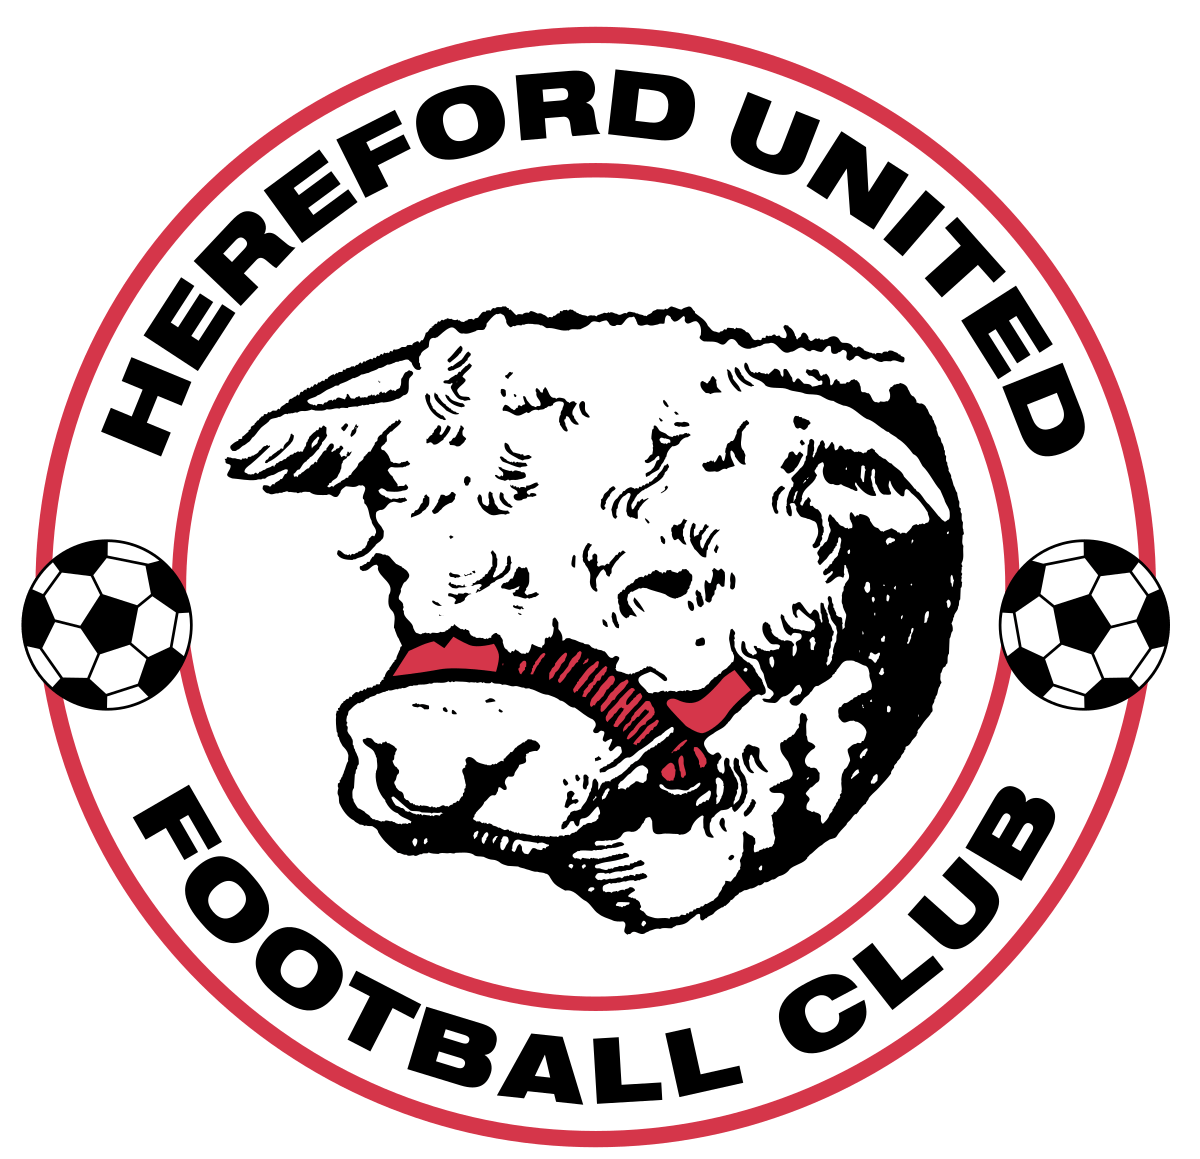 Hereford Logo - Hereford United F.C.